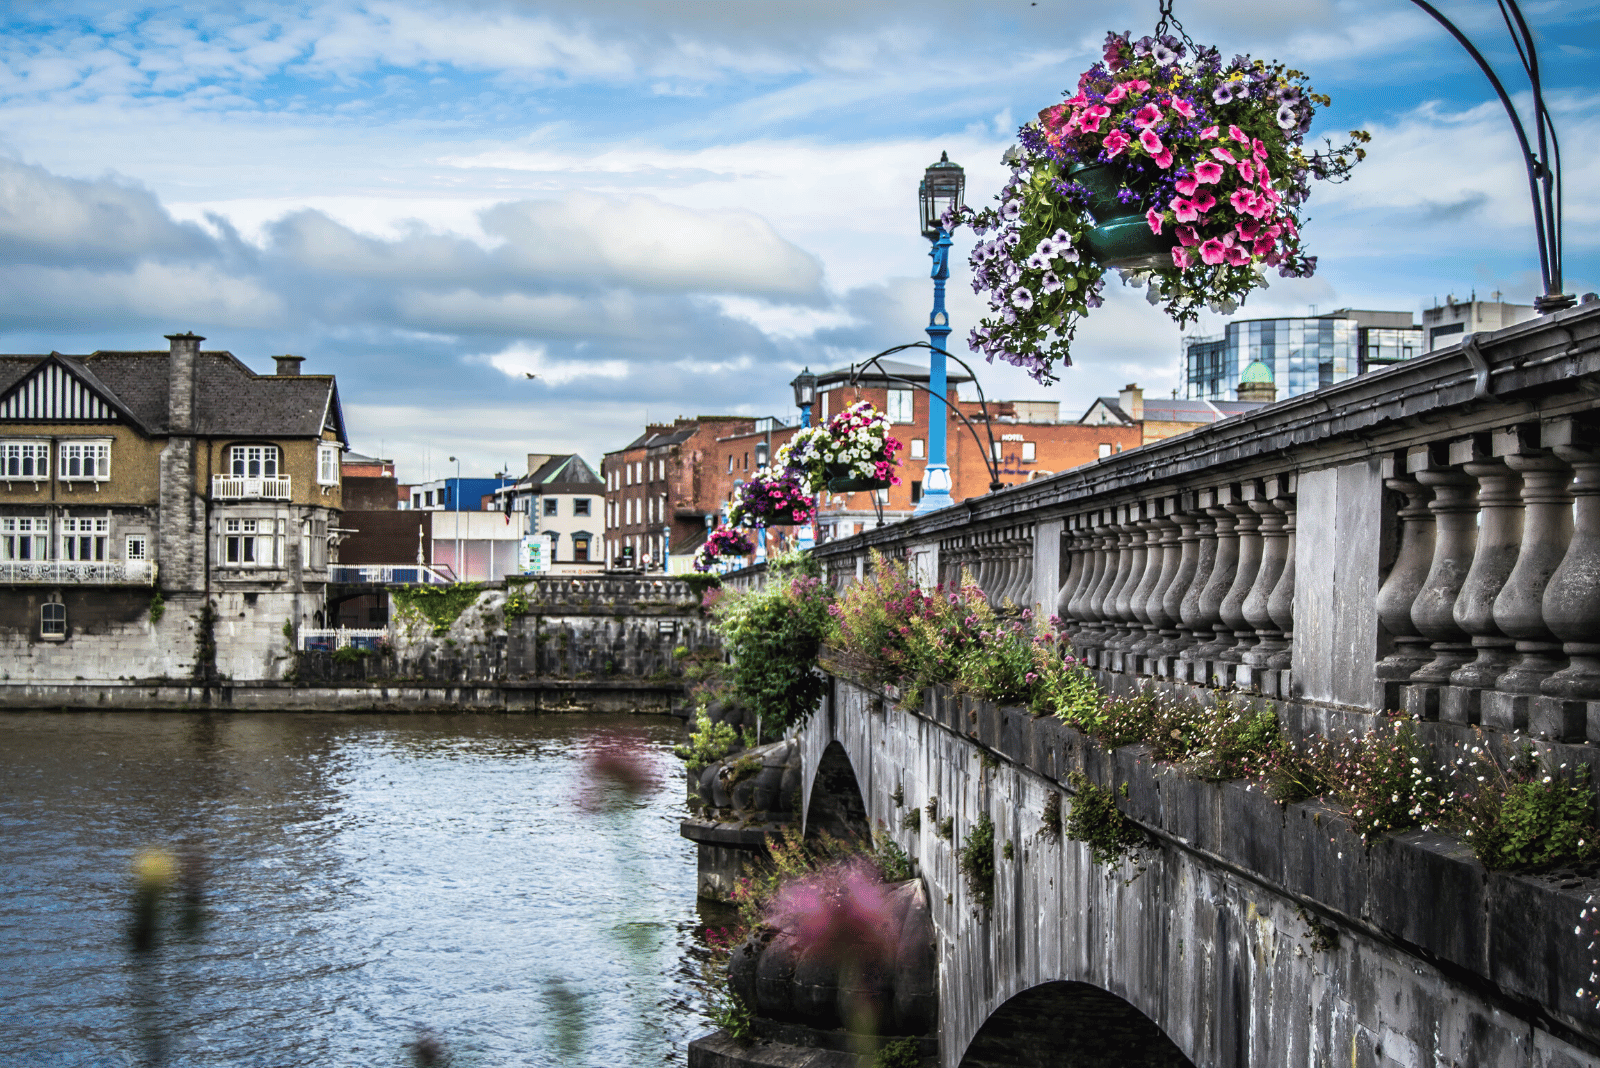 Bridge over the water in Limerick, Ireland